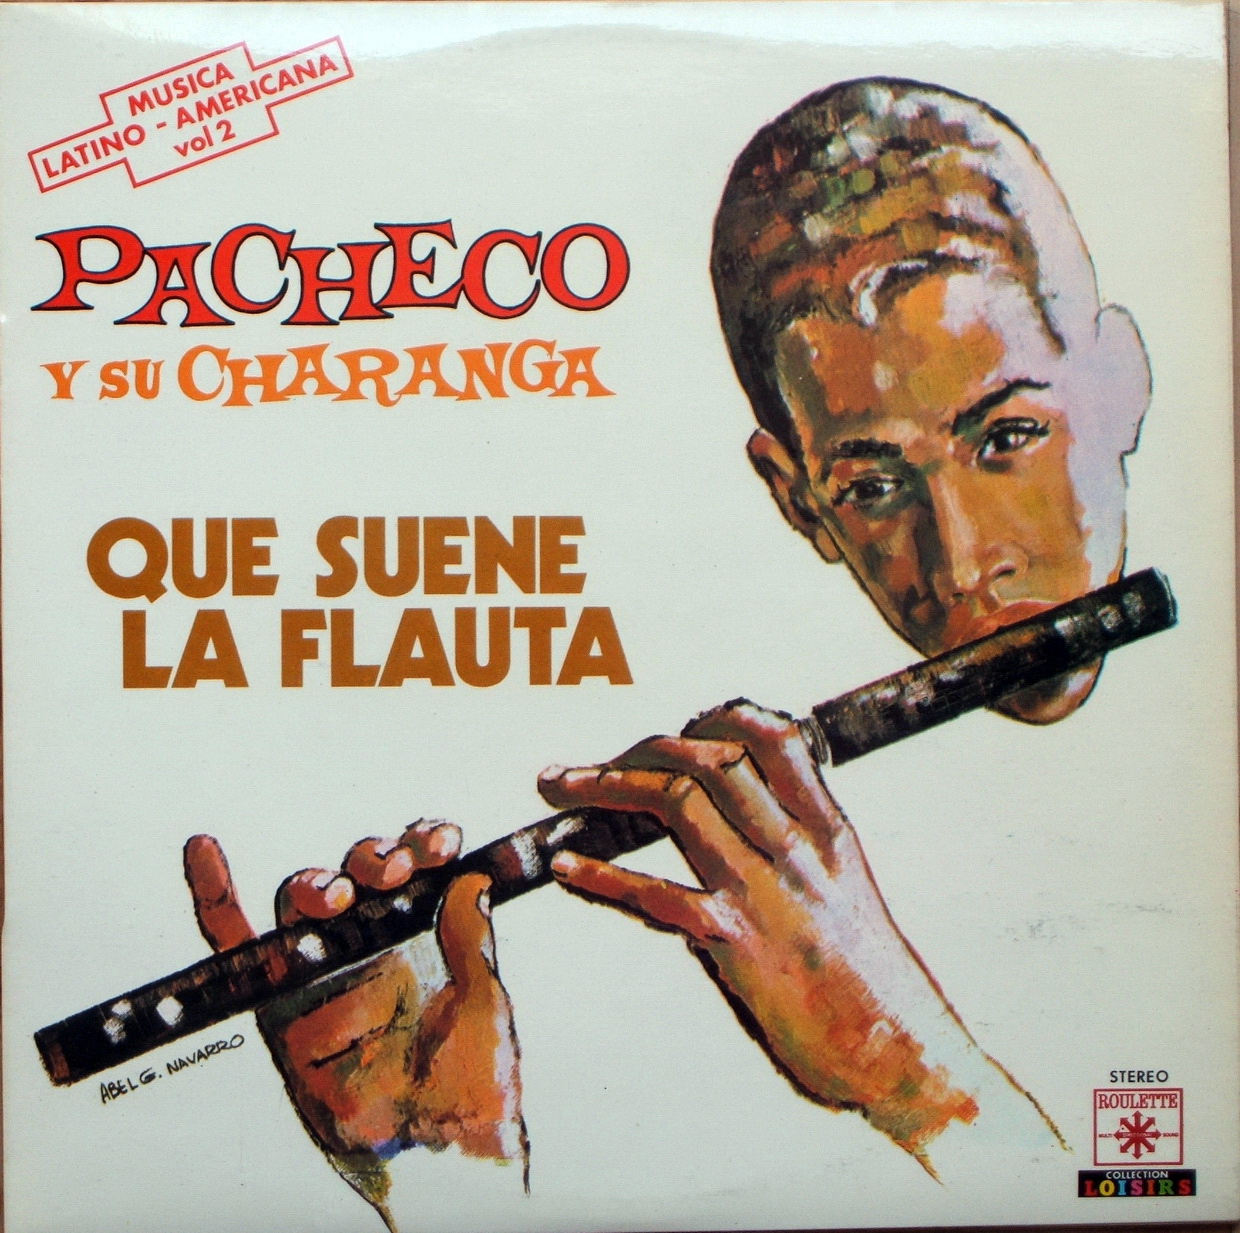 lo mejor de pacheco - que suene la flauta (1973) Slvlxr+582